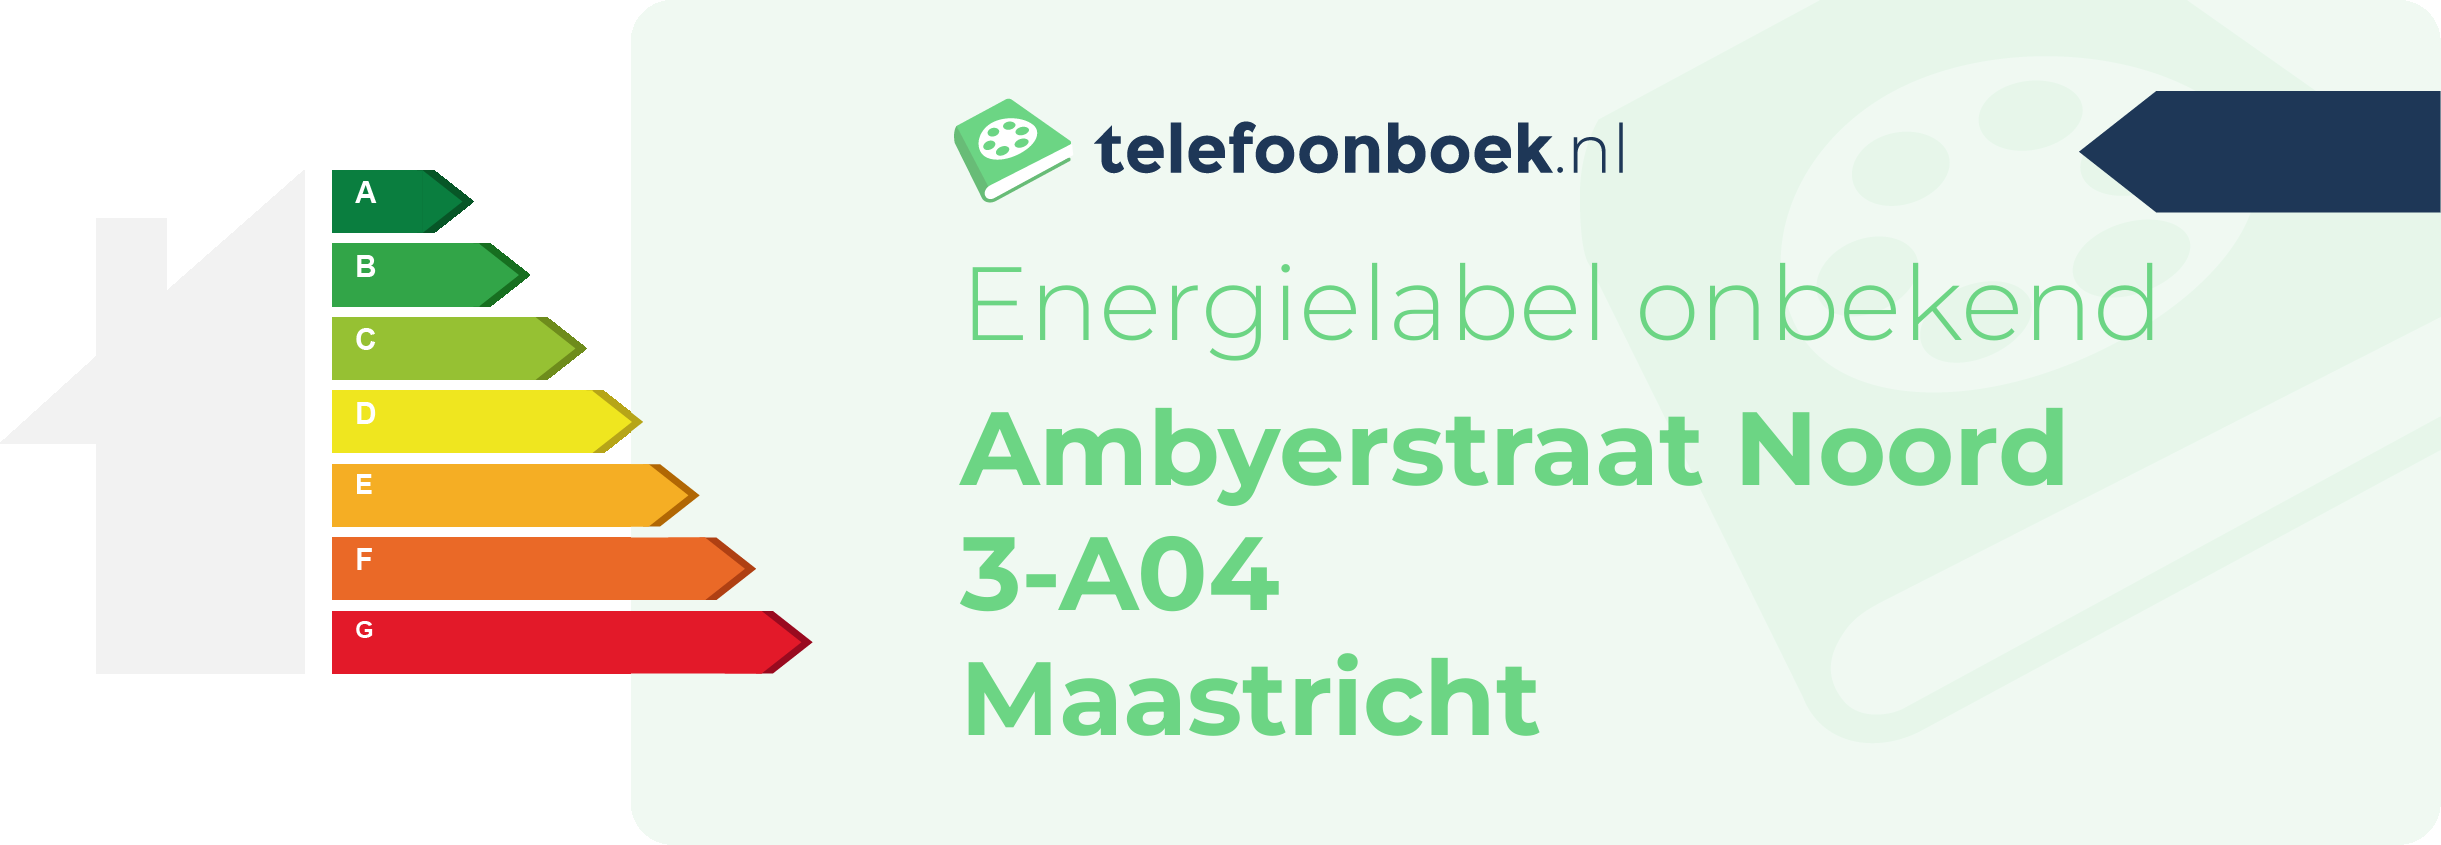 Energielabel Ambyerstraat Noord 3-A04 Maastricht